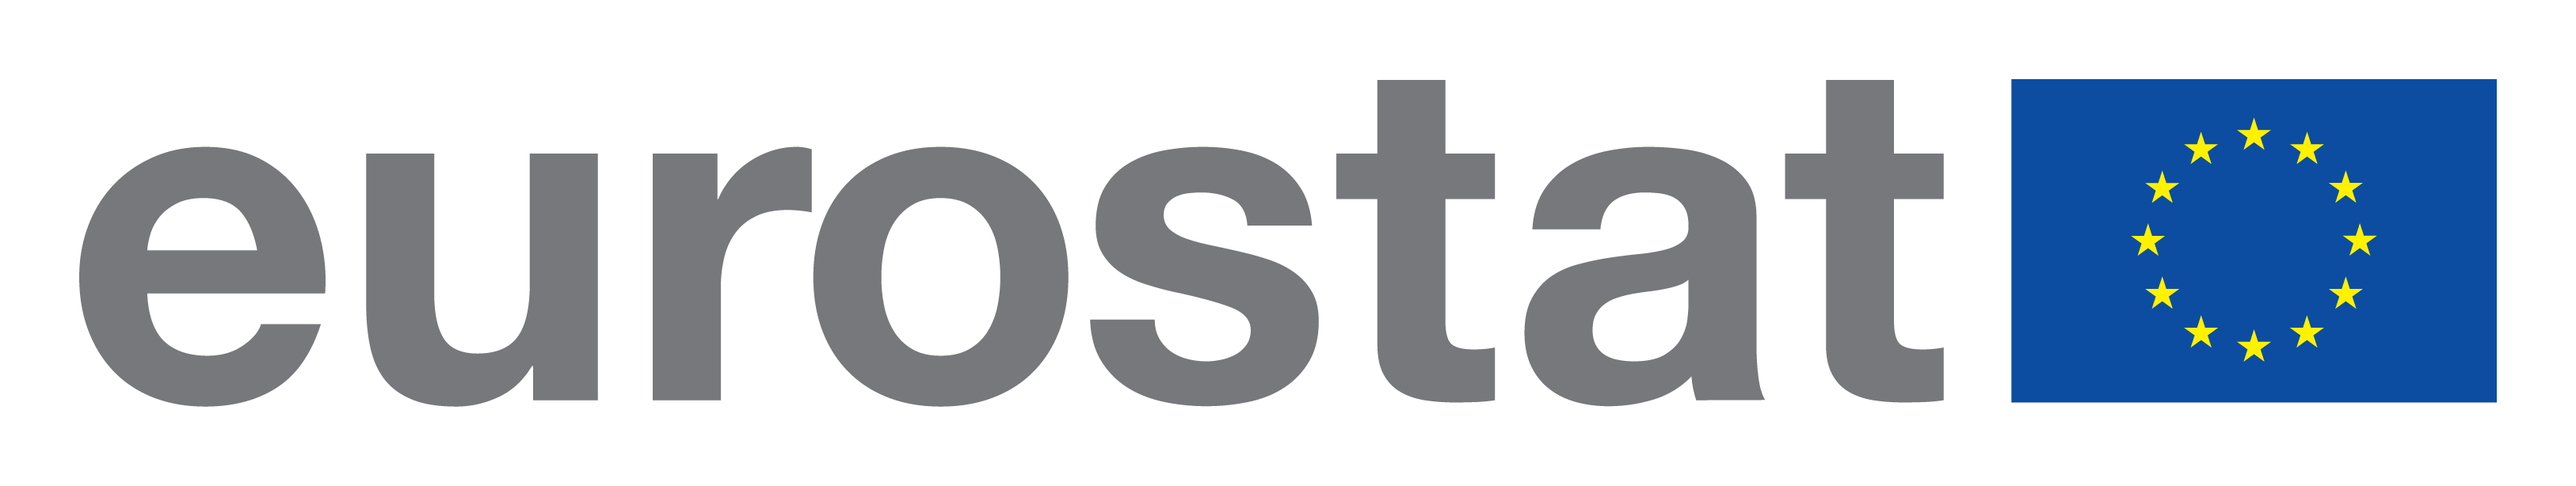 Commission européenne, Eurostat logo